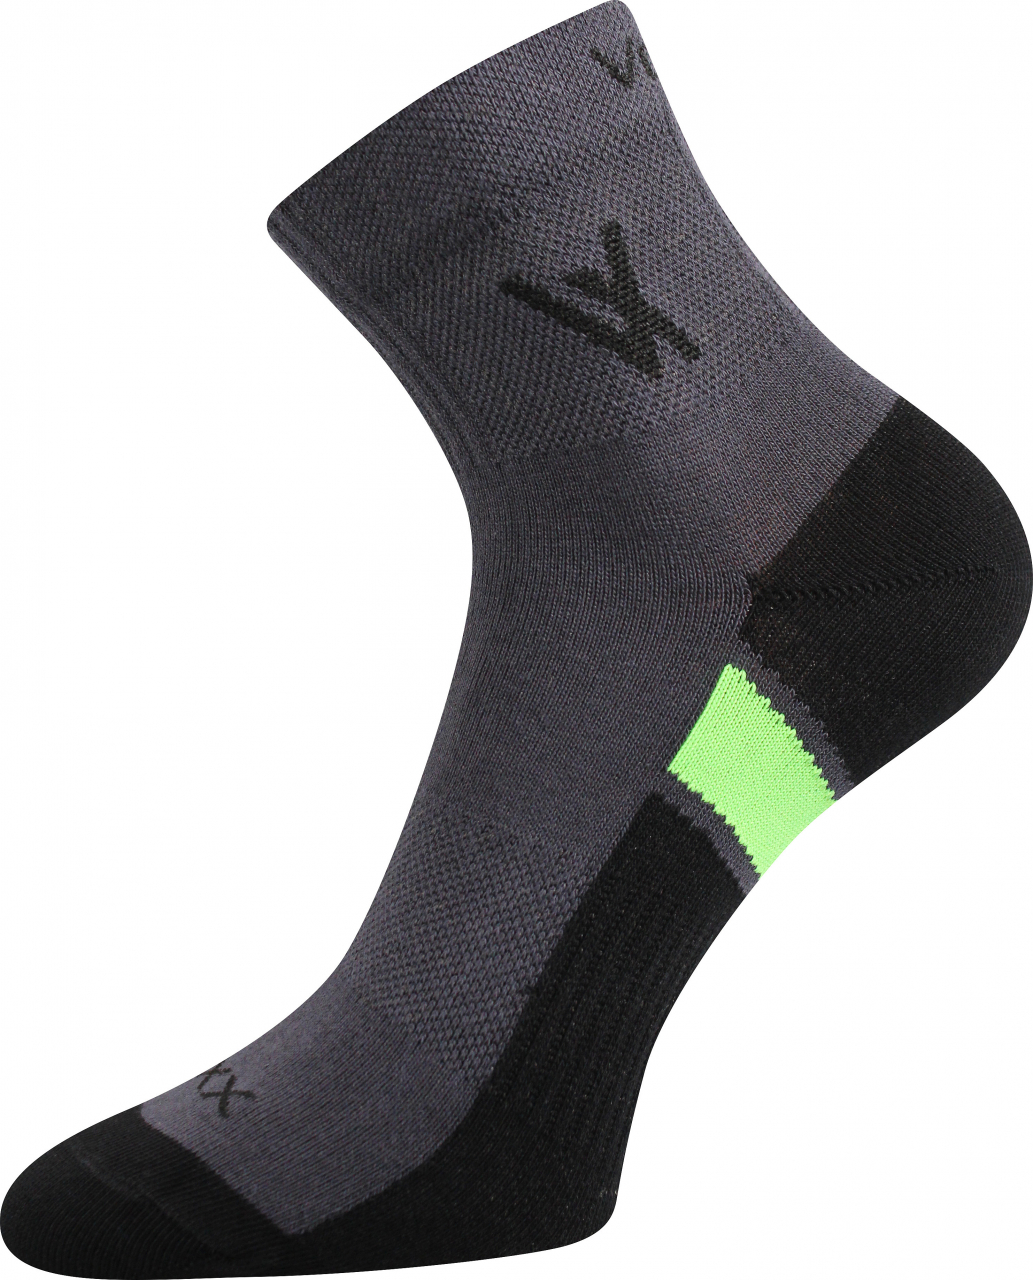 Ponožky sportovní Voxx Neo - tmavě šedé, 35-38